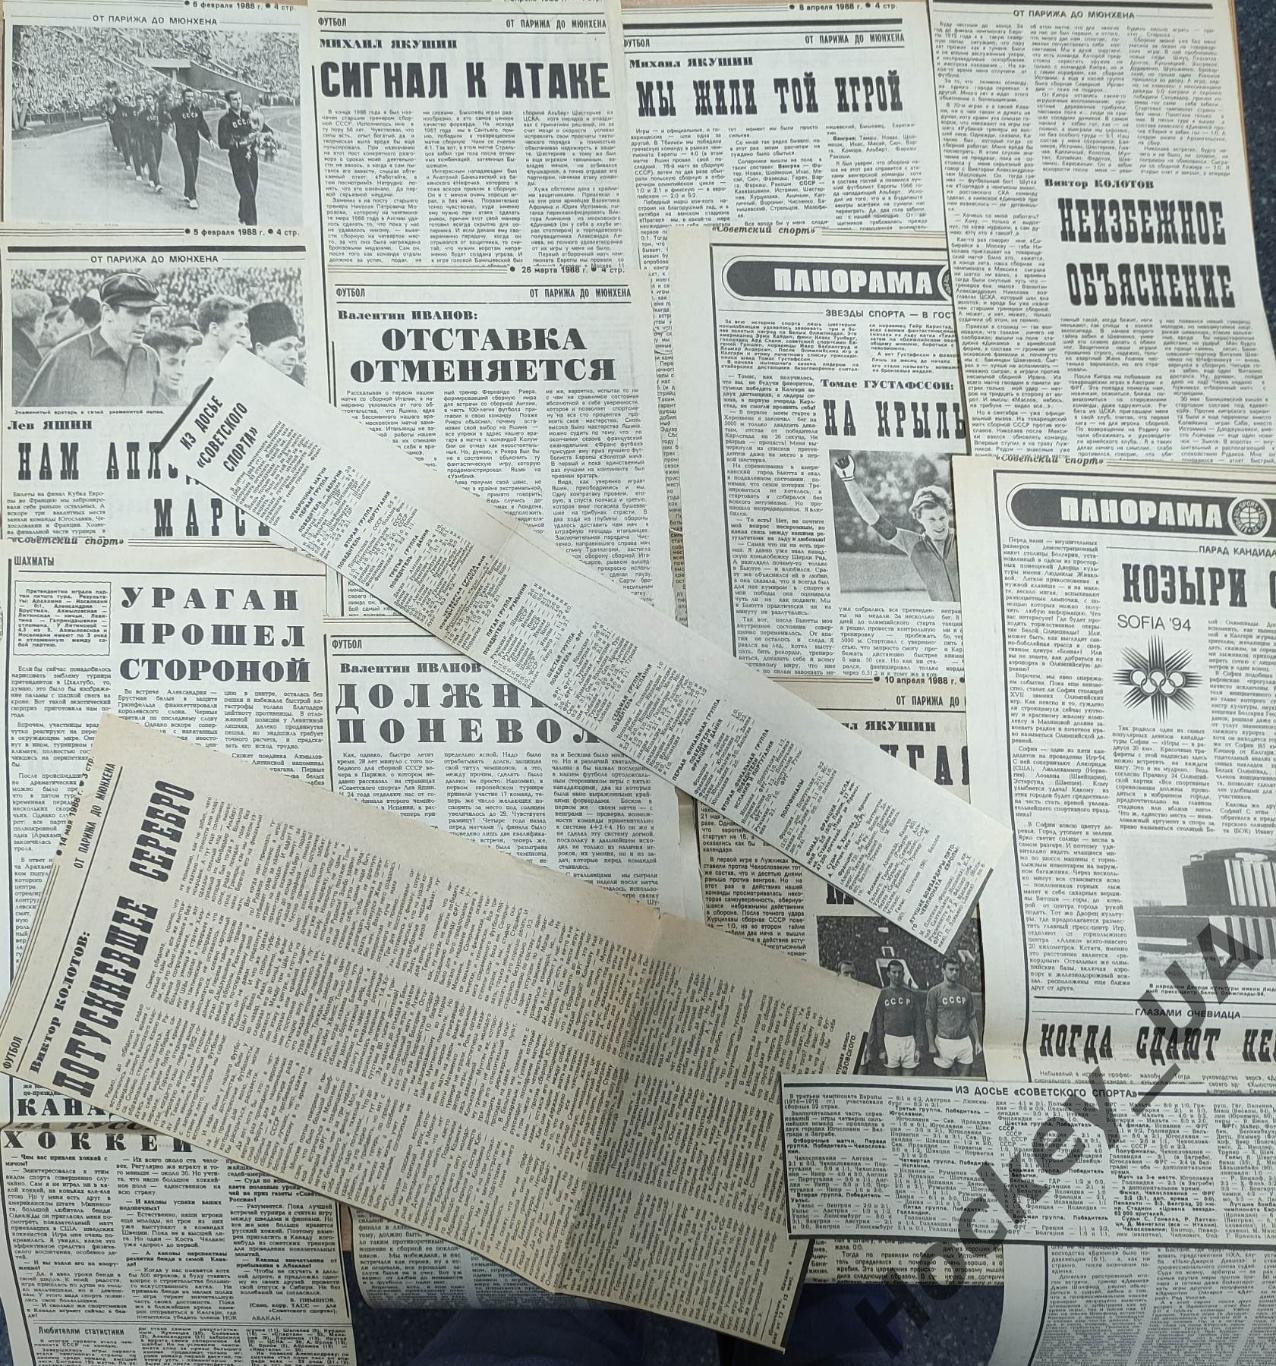 Вырезки из газет Советский спорт Превью к чемпионату Европы 1988